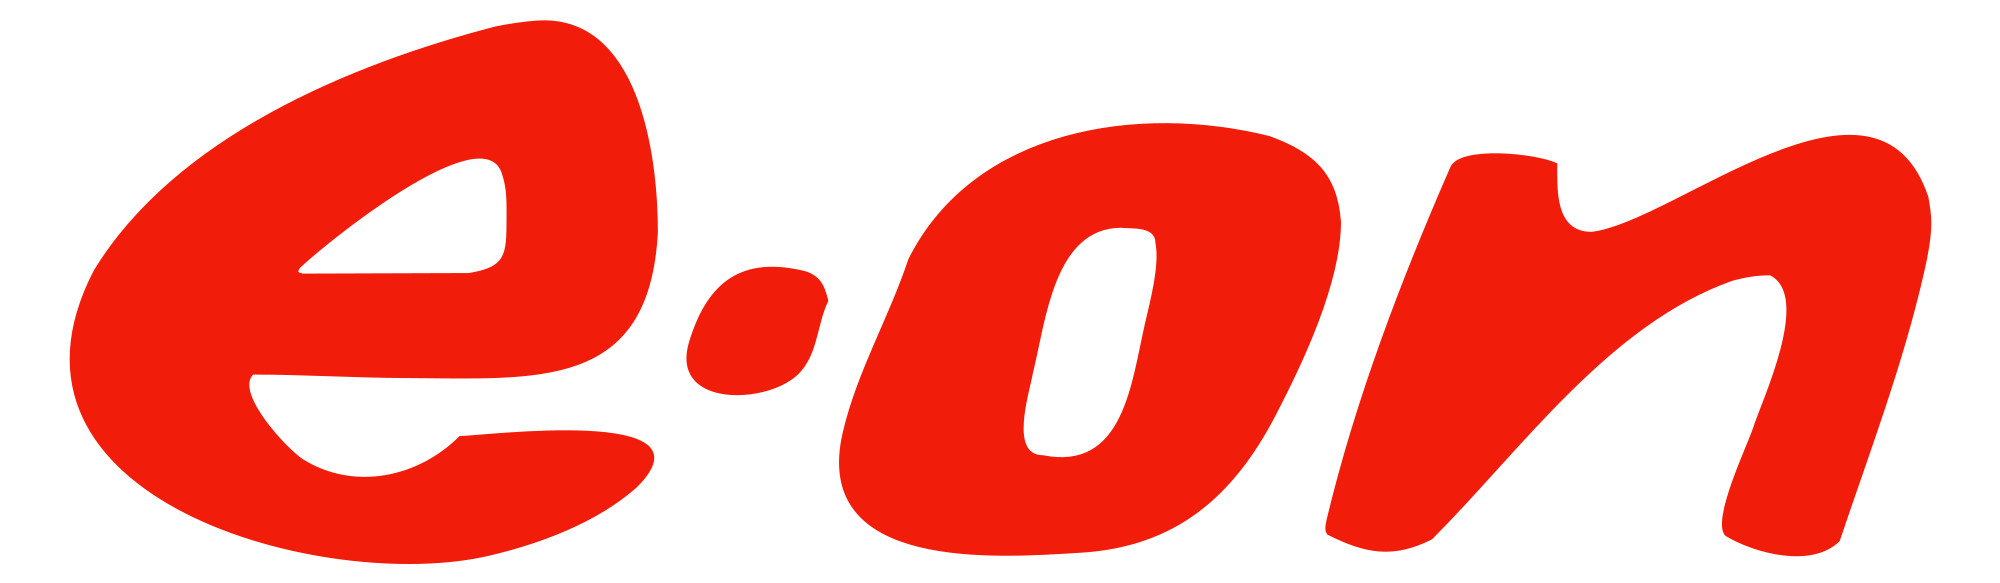 Mehldau & Steinfath Kunden und Partner E On Logo